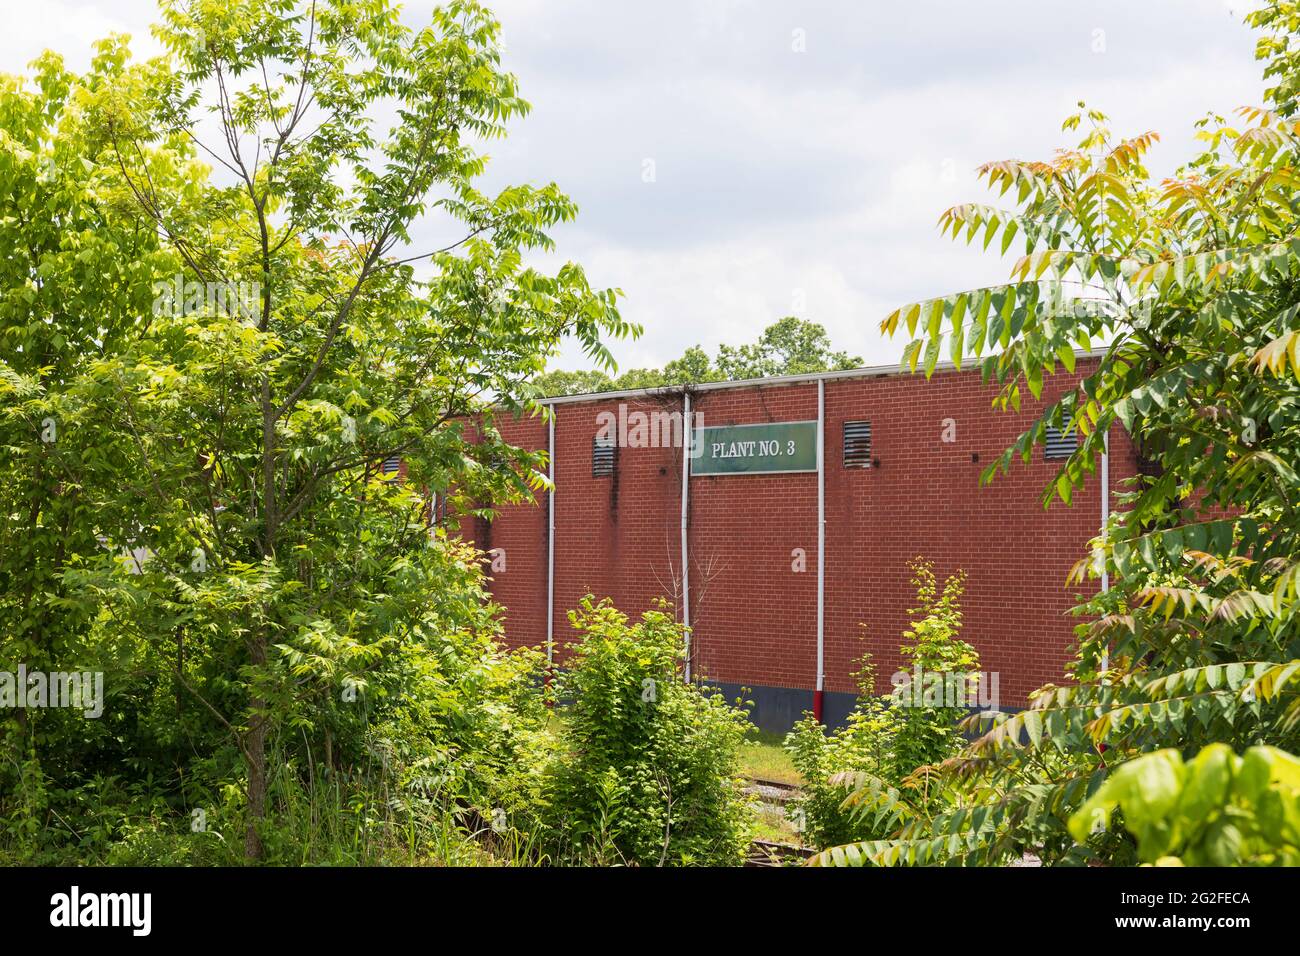 ELKIN, NC, EE.UU.-5 DE JUNIO de 2021: Una pared de ladrillo de un edificio industrial firmado 'Planta Nº 3', enmarcado por arbustos verdes. Imagen horizontal. Foto de stock